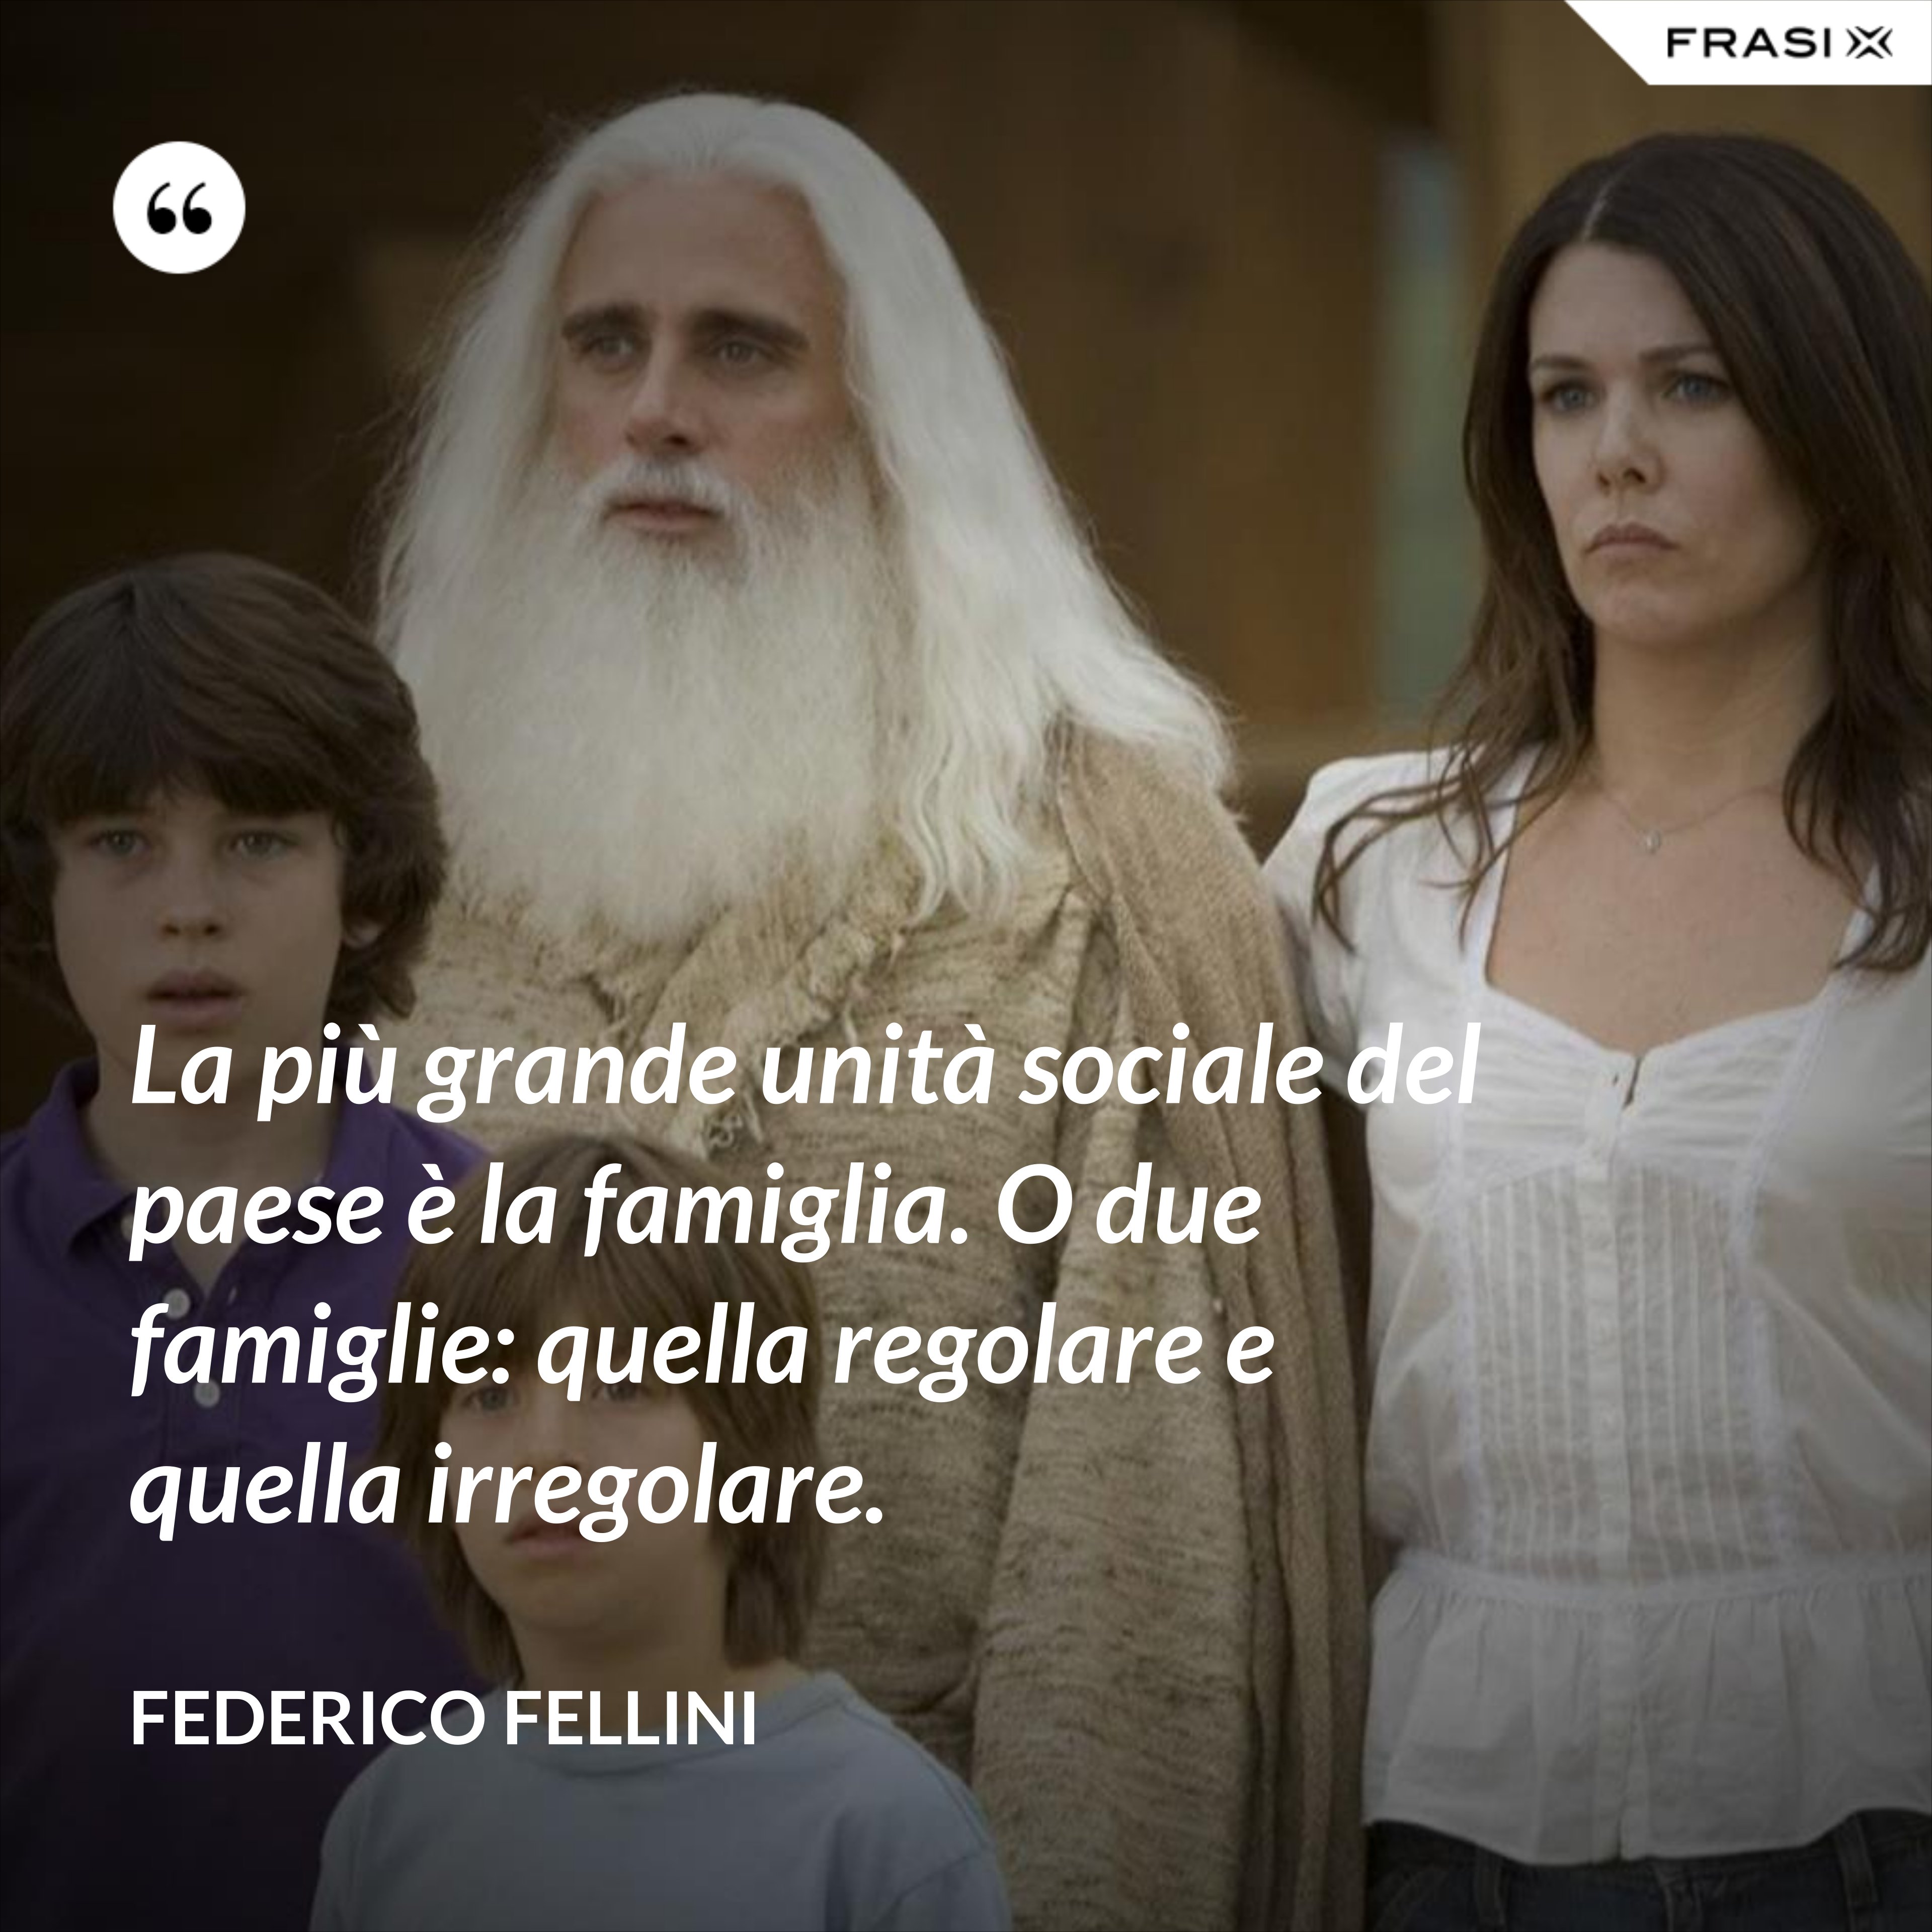 La più grande unità sociale del paese è la famiglia. O due famiglie: quella regolare e quella irregolare. - Federico Fellini